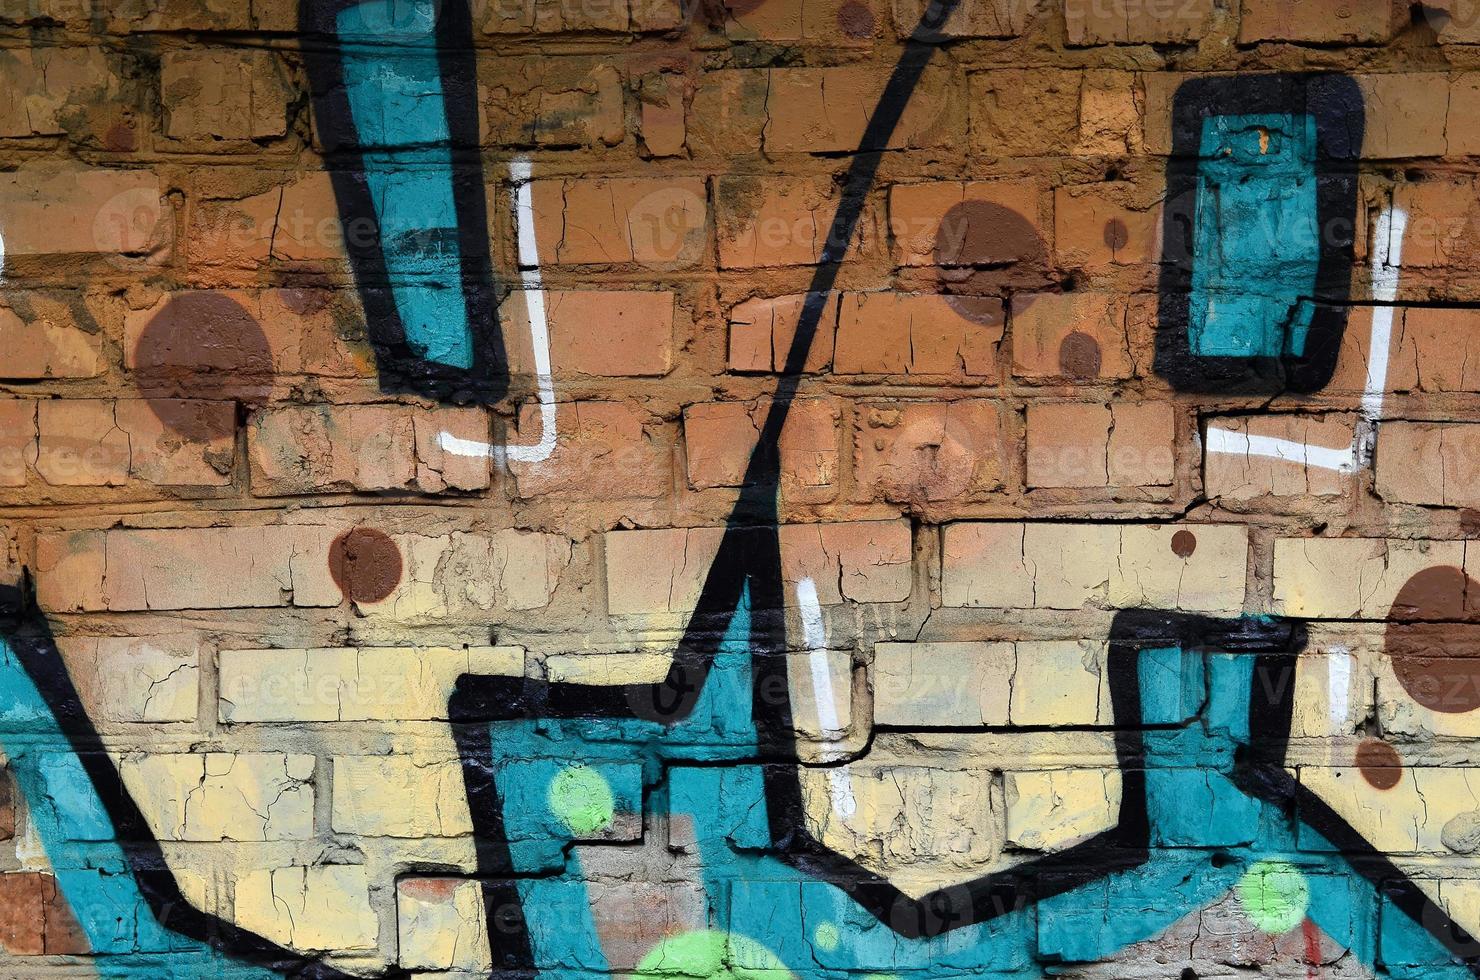 beaux graffitis d'art de rue. couleur abstraite dessin créatif couleurs de mode sur les murs de la ville. culture urbaine contemporaine. peinture de titre sur les murs. protestation des jeunes de la culture photo